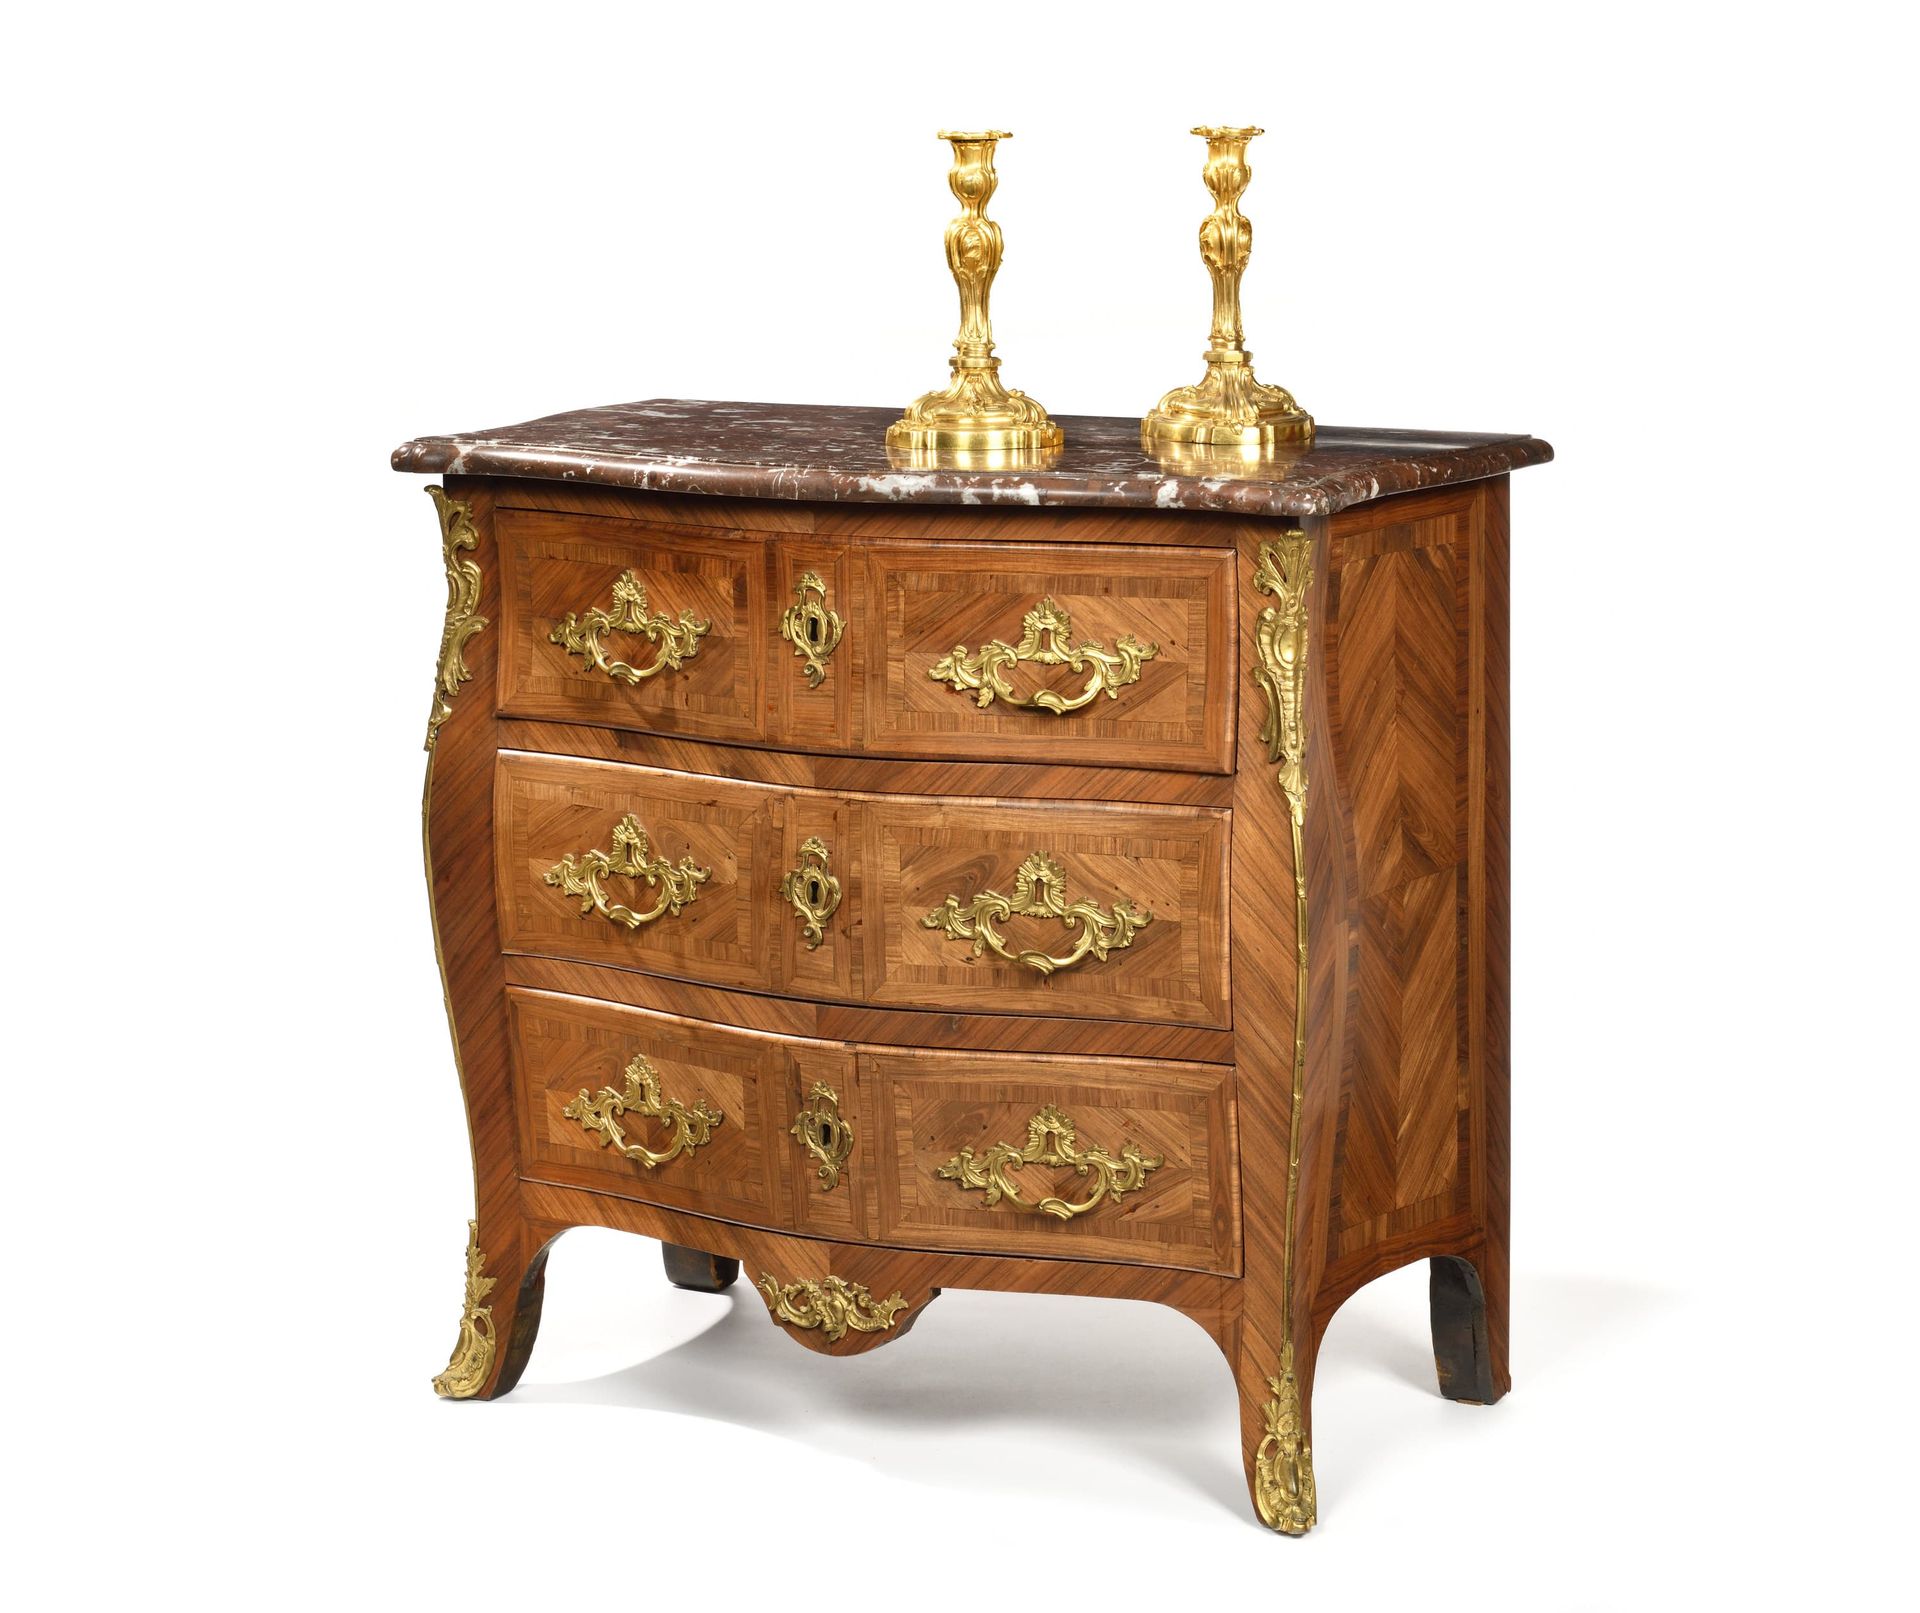 Null 让-查尔斯-埃洛姆(1714-1763)
木质和贴面的抽屉柜，开有三个抽屉和横档。 抽屉上有楣状镶嵌装饰，弯曲的侧面有钻石楣状镶嵌装饰。美丽的清漆青铜&hellip;